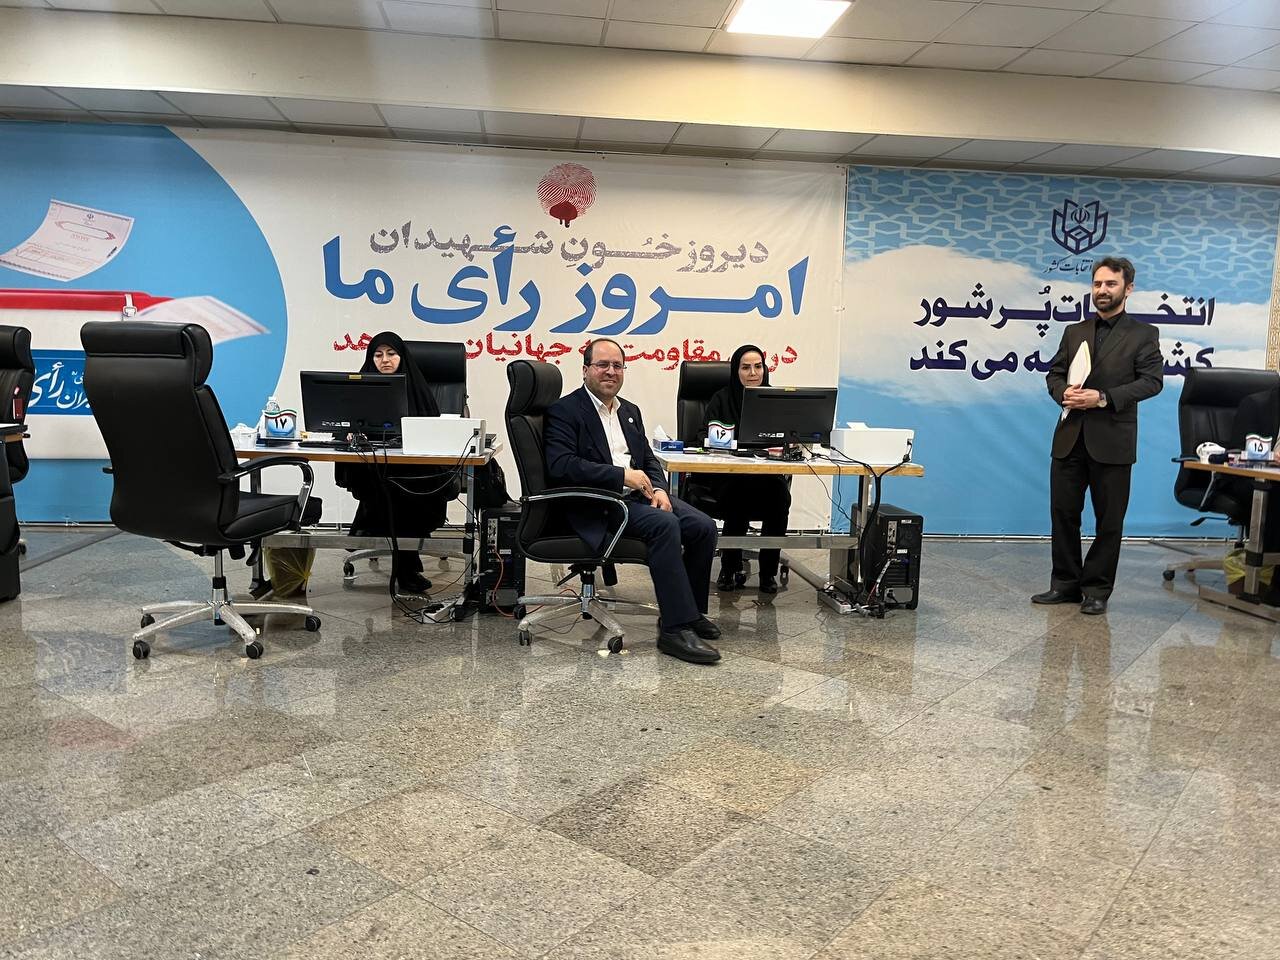 ثبت نام وزیر احمدی نژاد در انتخابات ریاست جمهوری/ رئیس دانشگاه تهران هم آمد +عکس